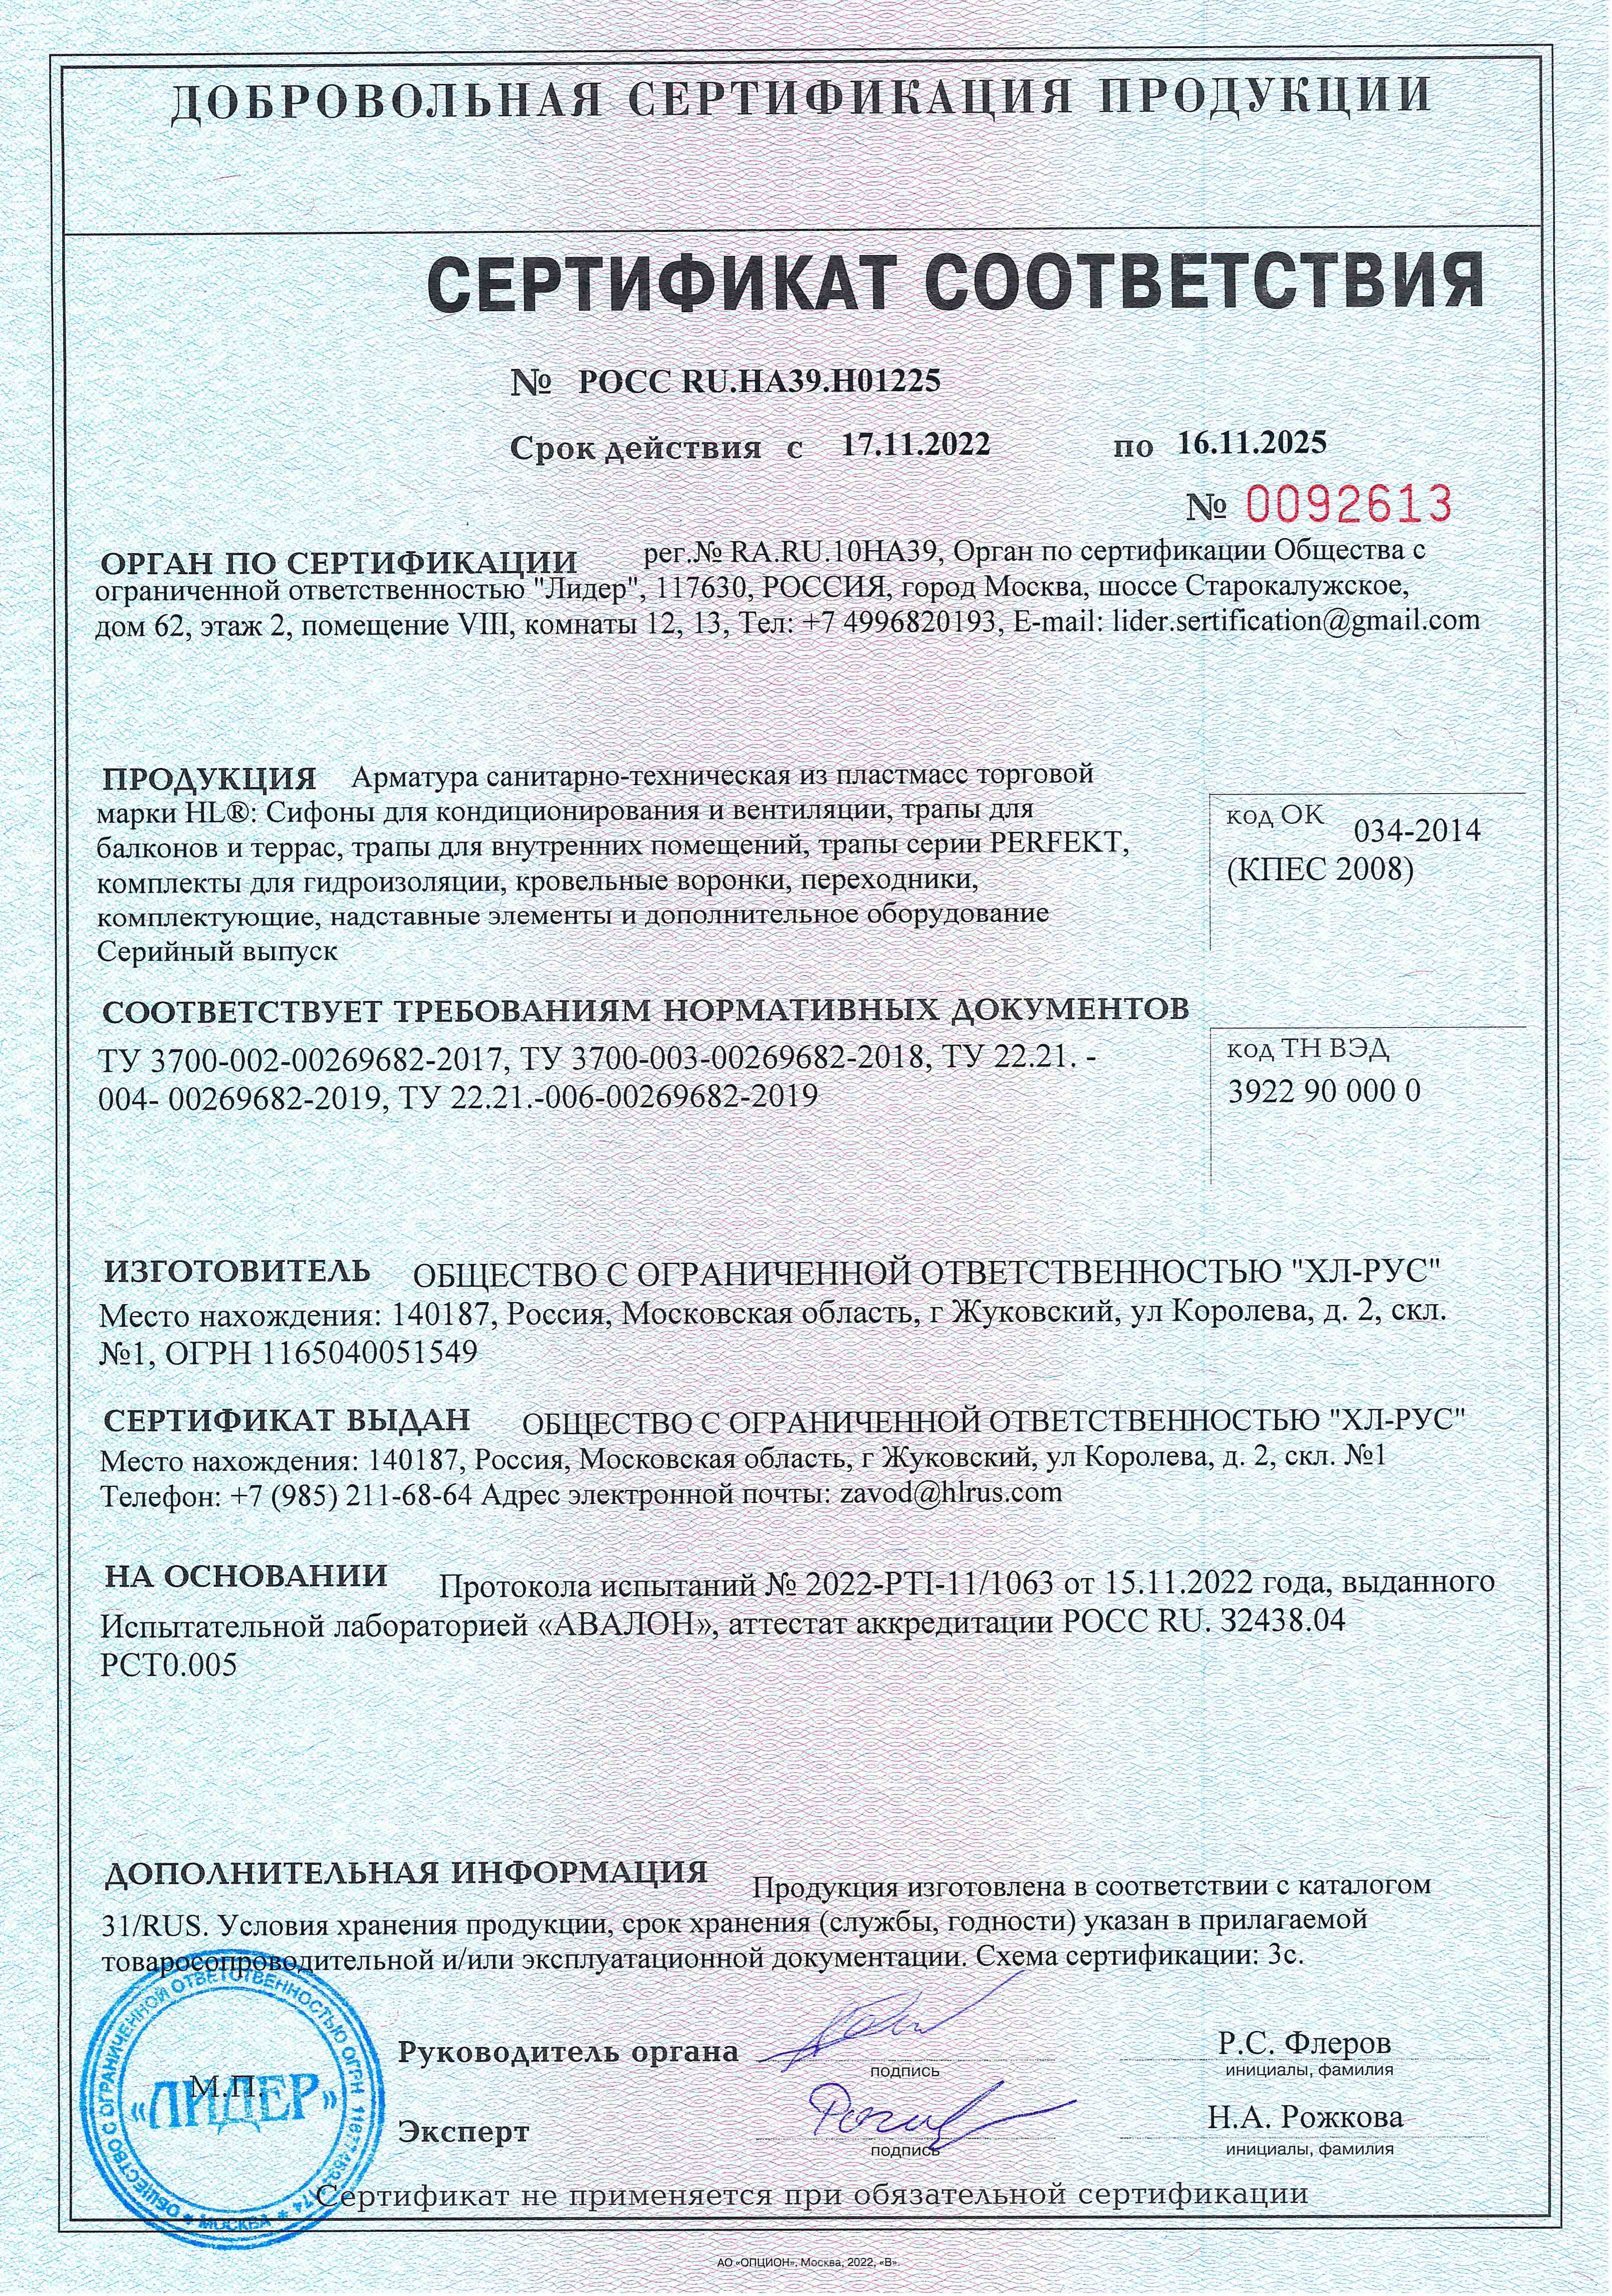 Сертификат соответствия на продукцию HL российского производства OOO "ХЛ-РУС" каталог 31/RUS